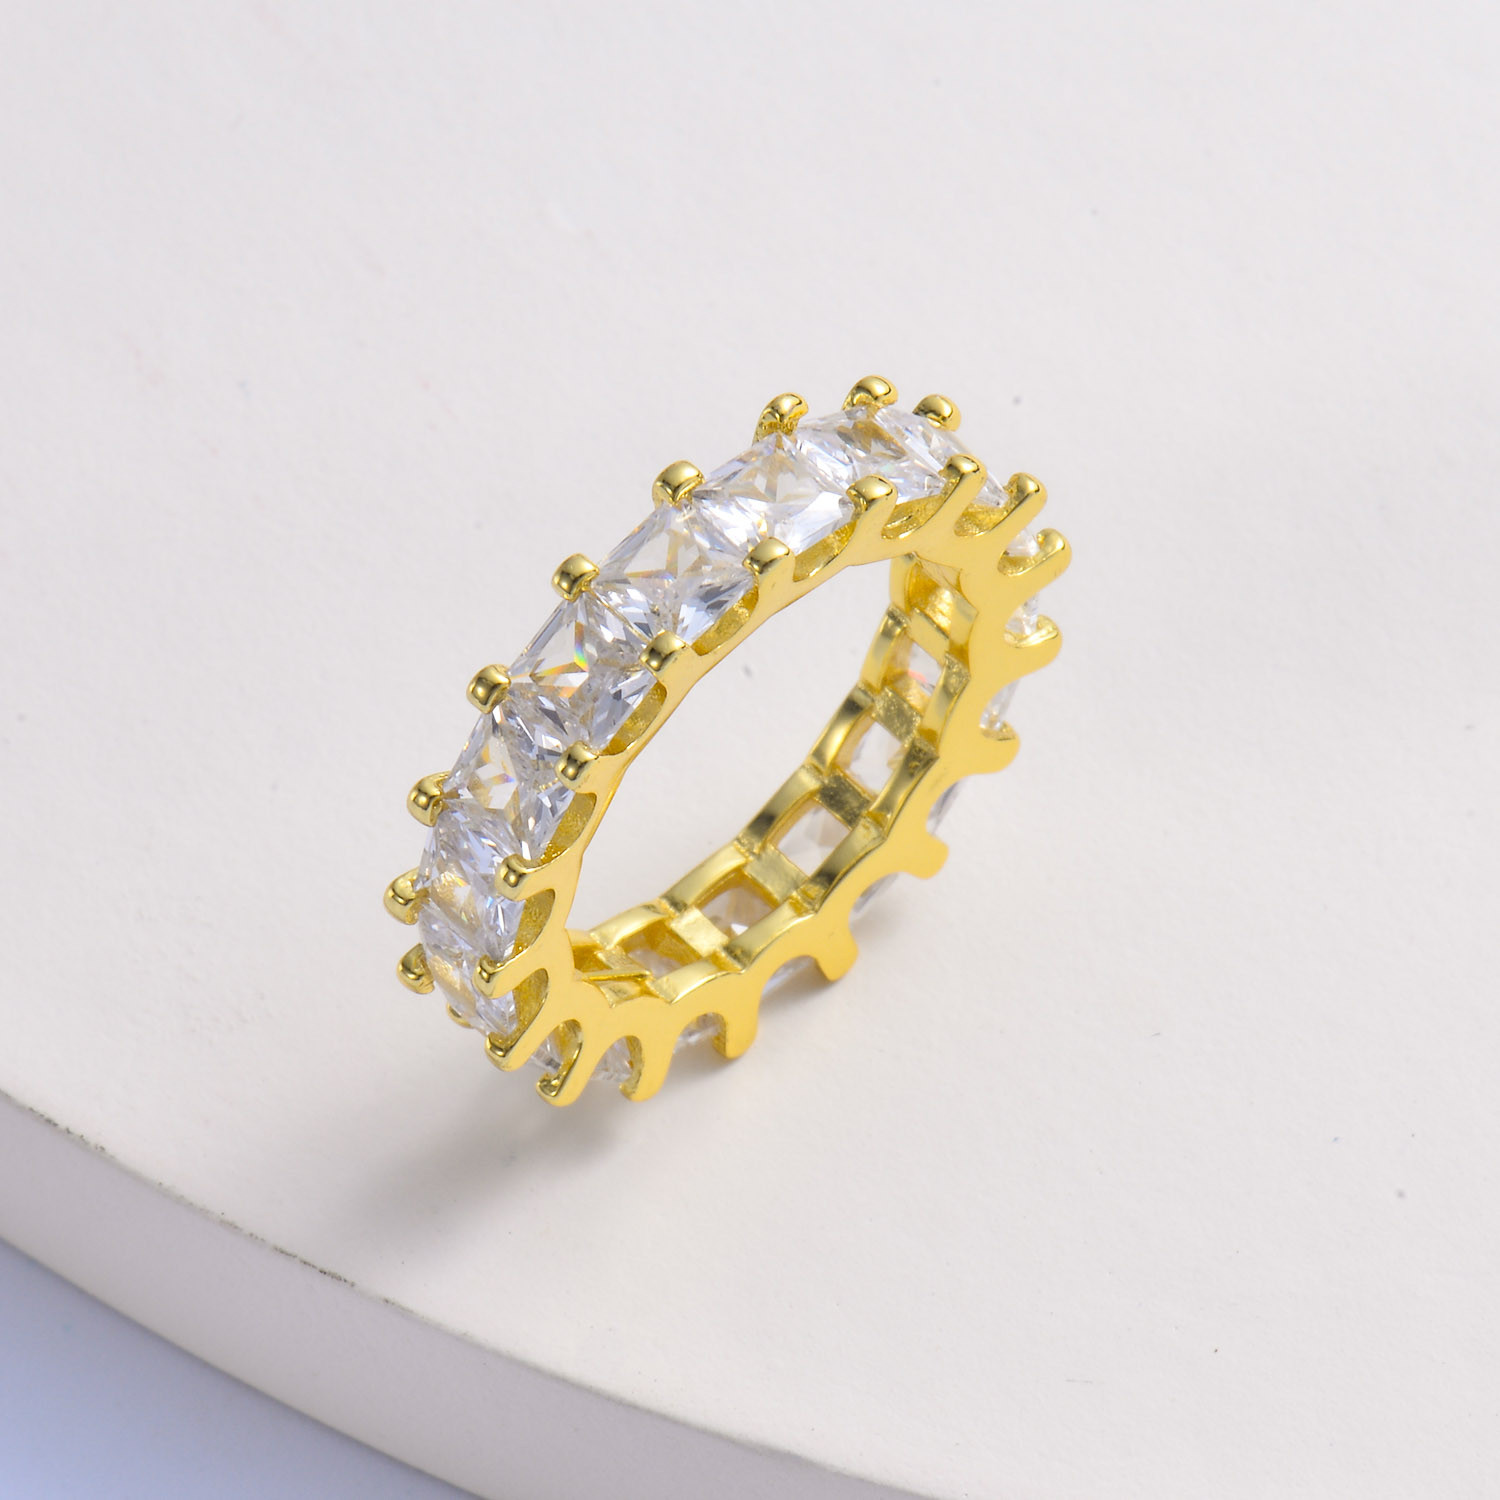 US$ 2.10 - anillo de huggies de oro laminado 18k con cristal para mujer por mayor - Joyas De Acero Por